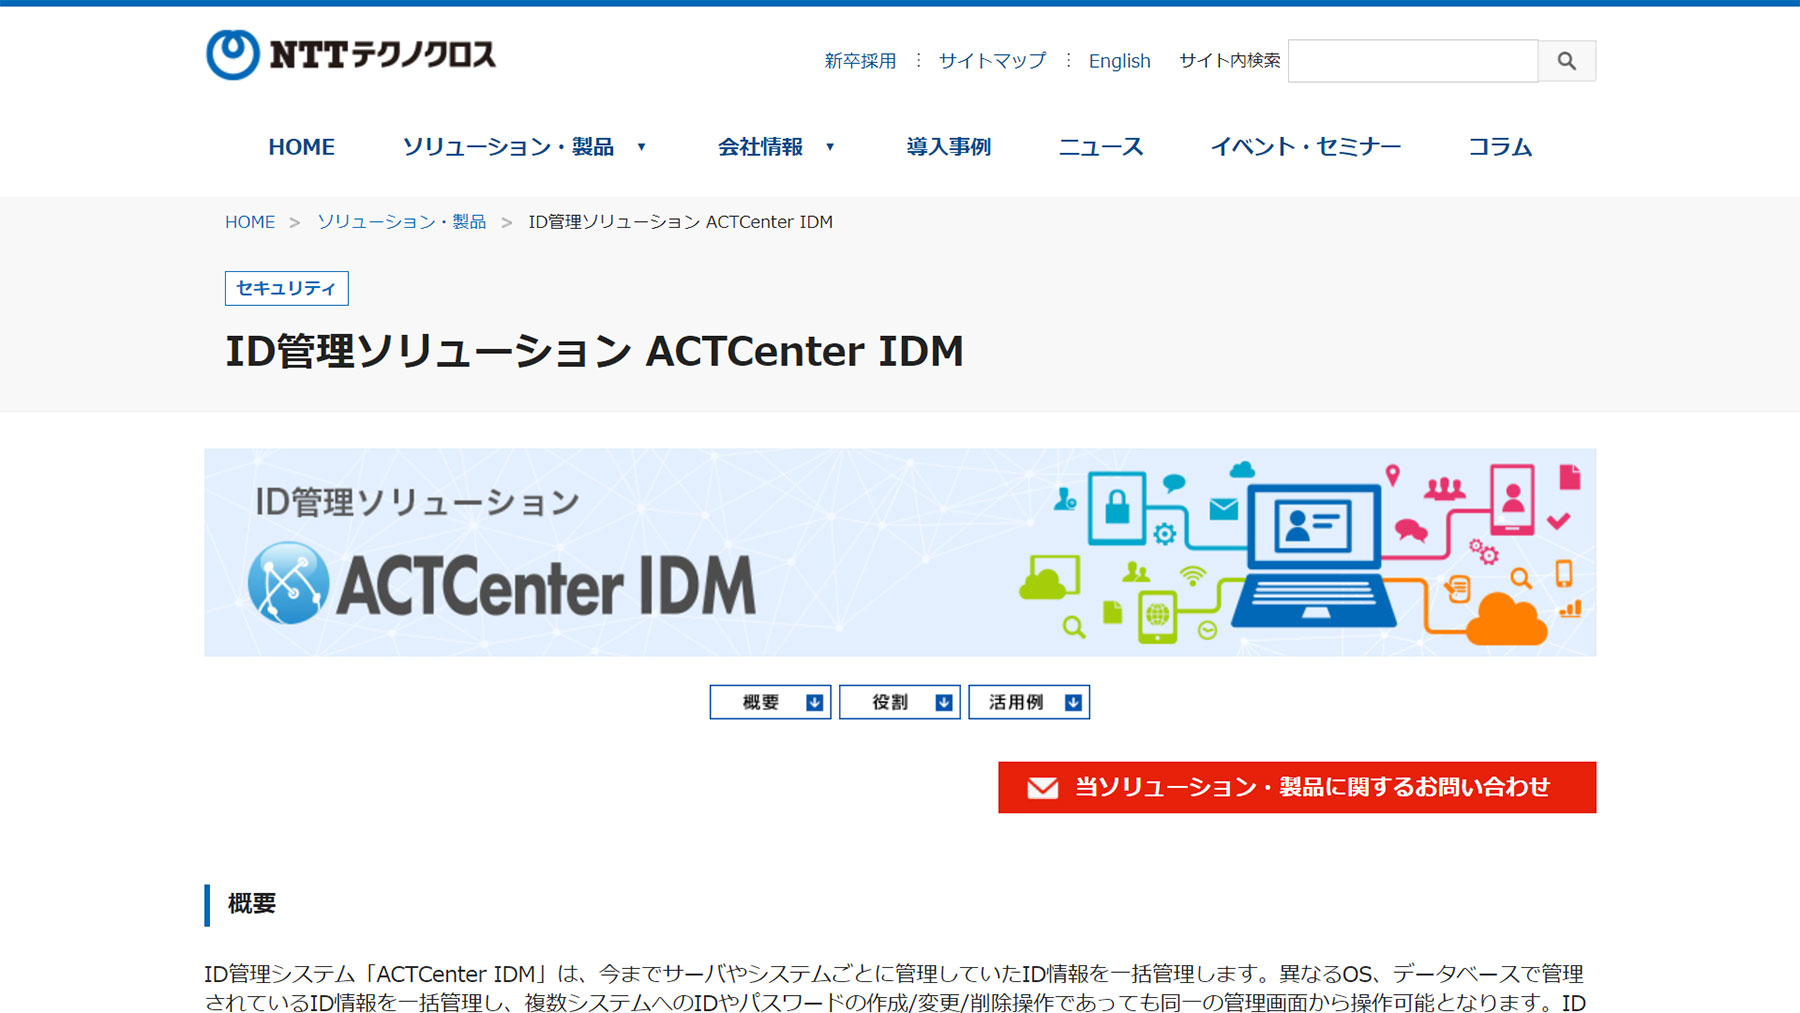 ACTCenter IDM